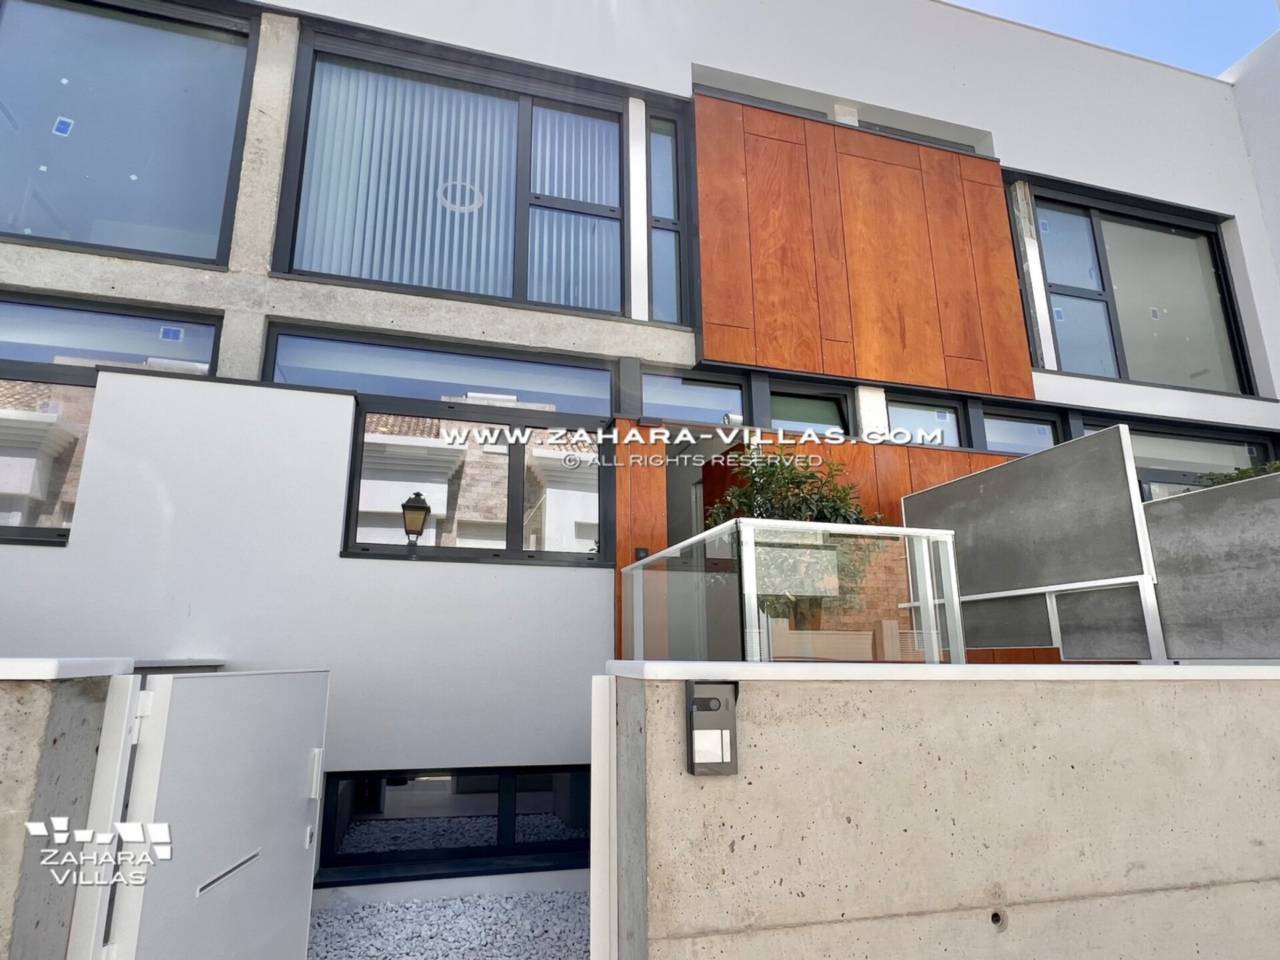 Imagen 40 de Promoción obra nueva terminada "EL OASIS DE ZAHARA" viviendas adosadas junto al mar